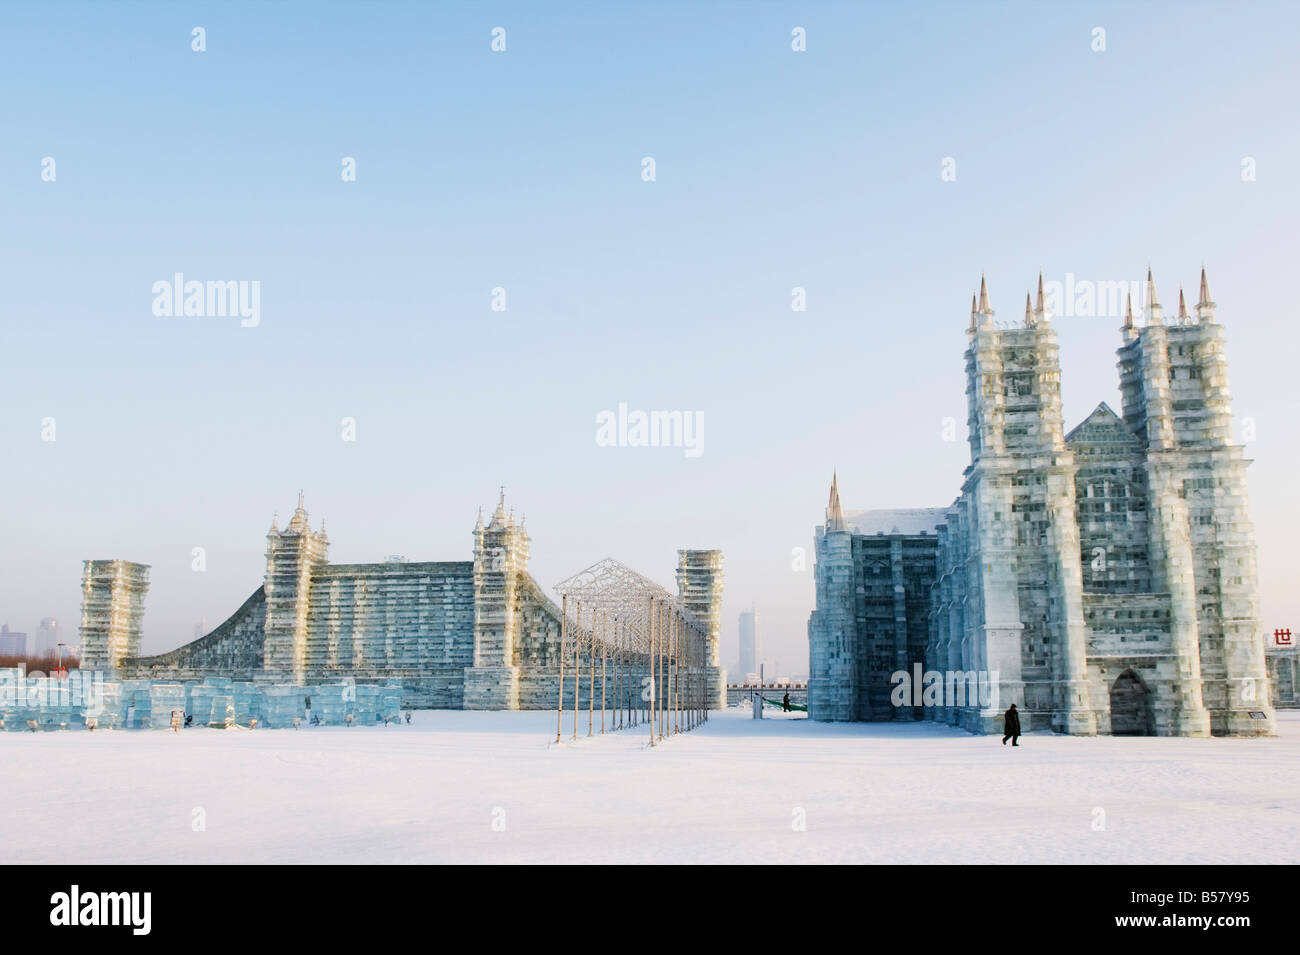 Sculptures de glace de la cathédrale Notre-Dame et du London Tower Bridge au festival de lanternes de glace, province de Heilongjiang, Chine Banque D'Images